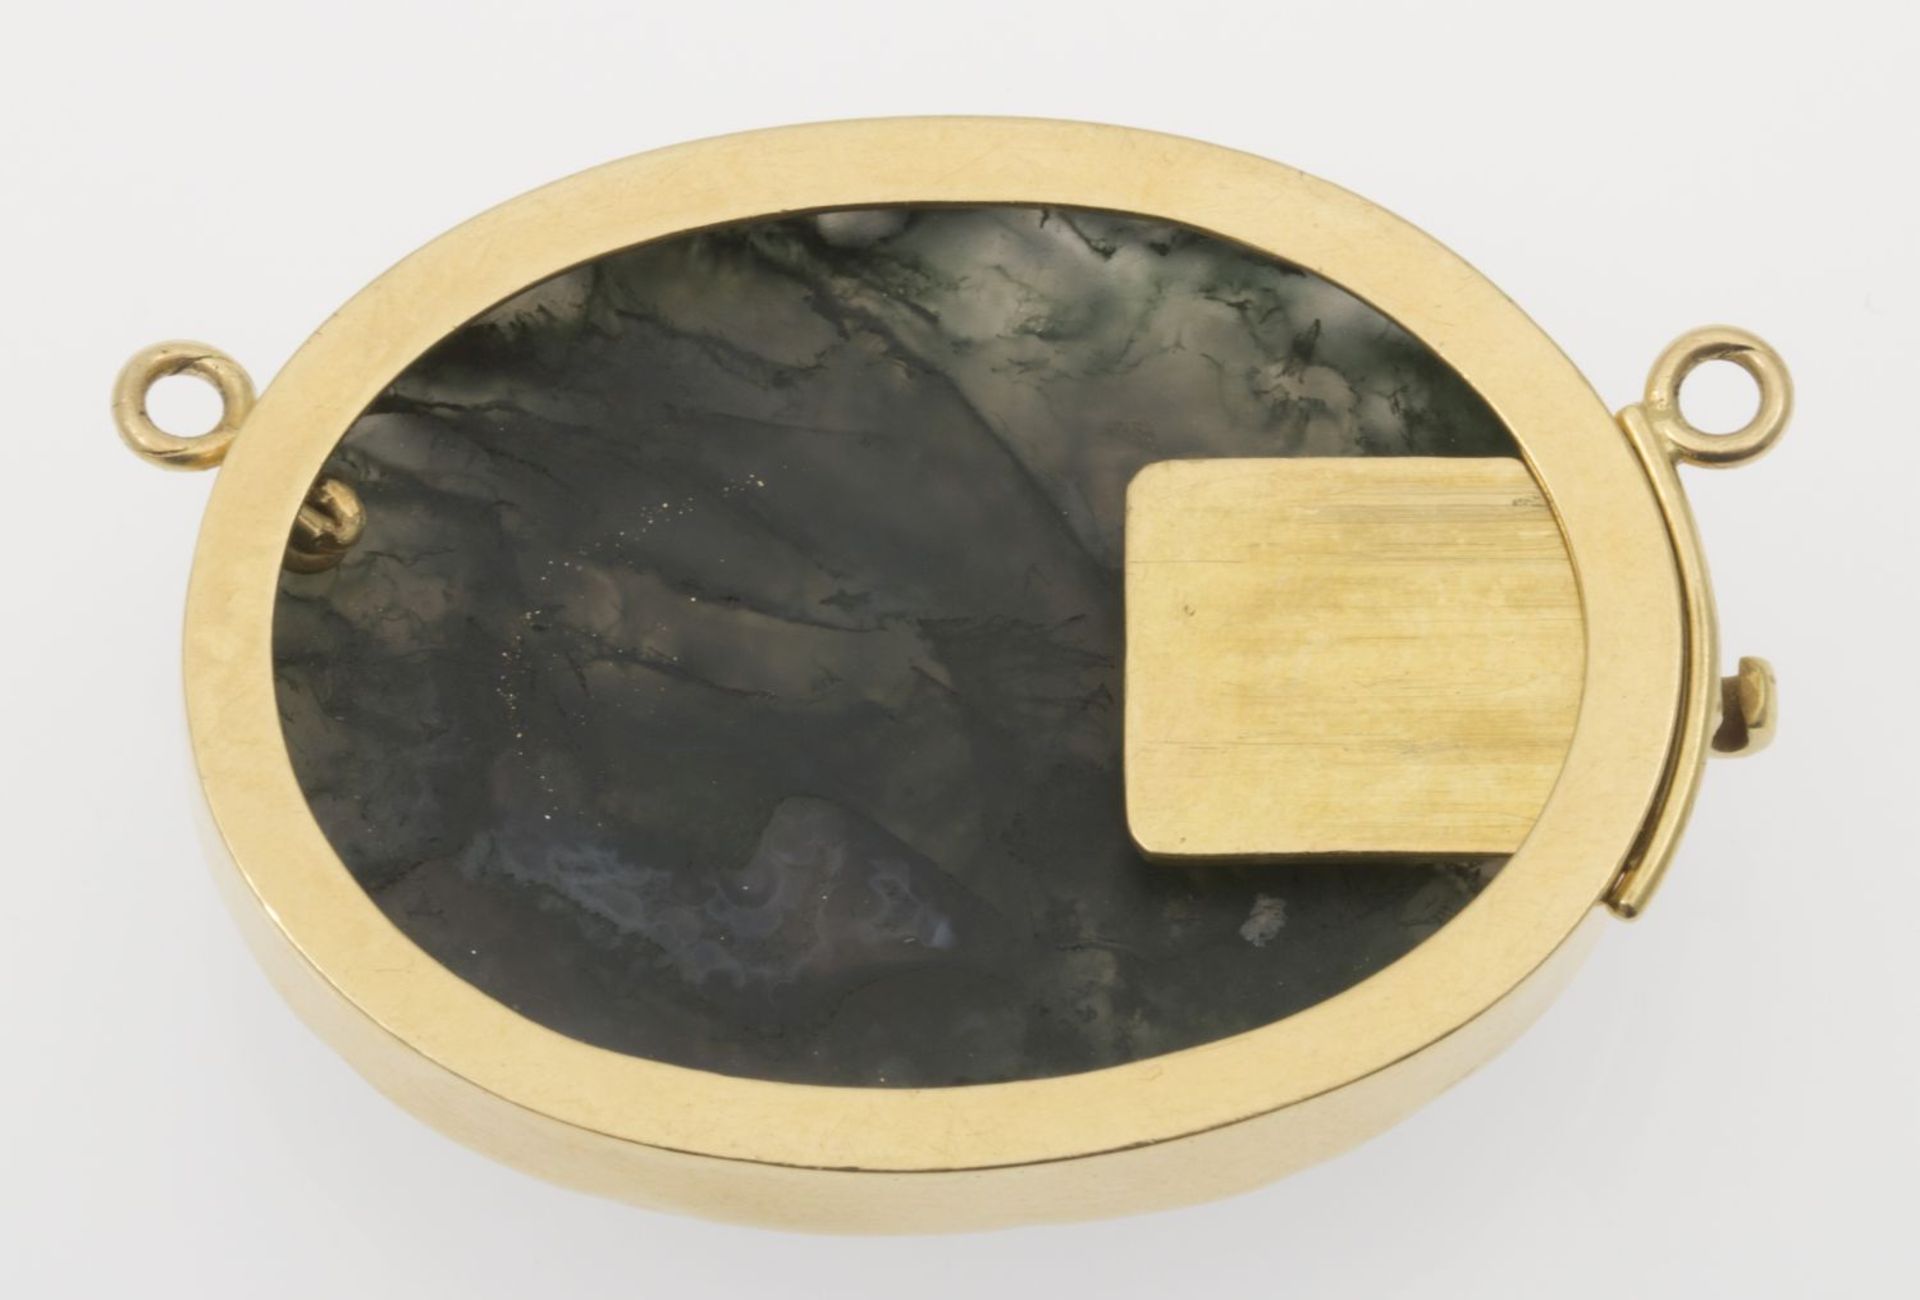 Verschluss Gelbgold 750. Ovale Form. Ausgefasst mit Moosachat, geschnitten. Floraler Dekor. L. 4 cm. - Image 2 of 2